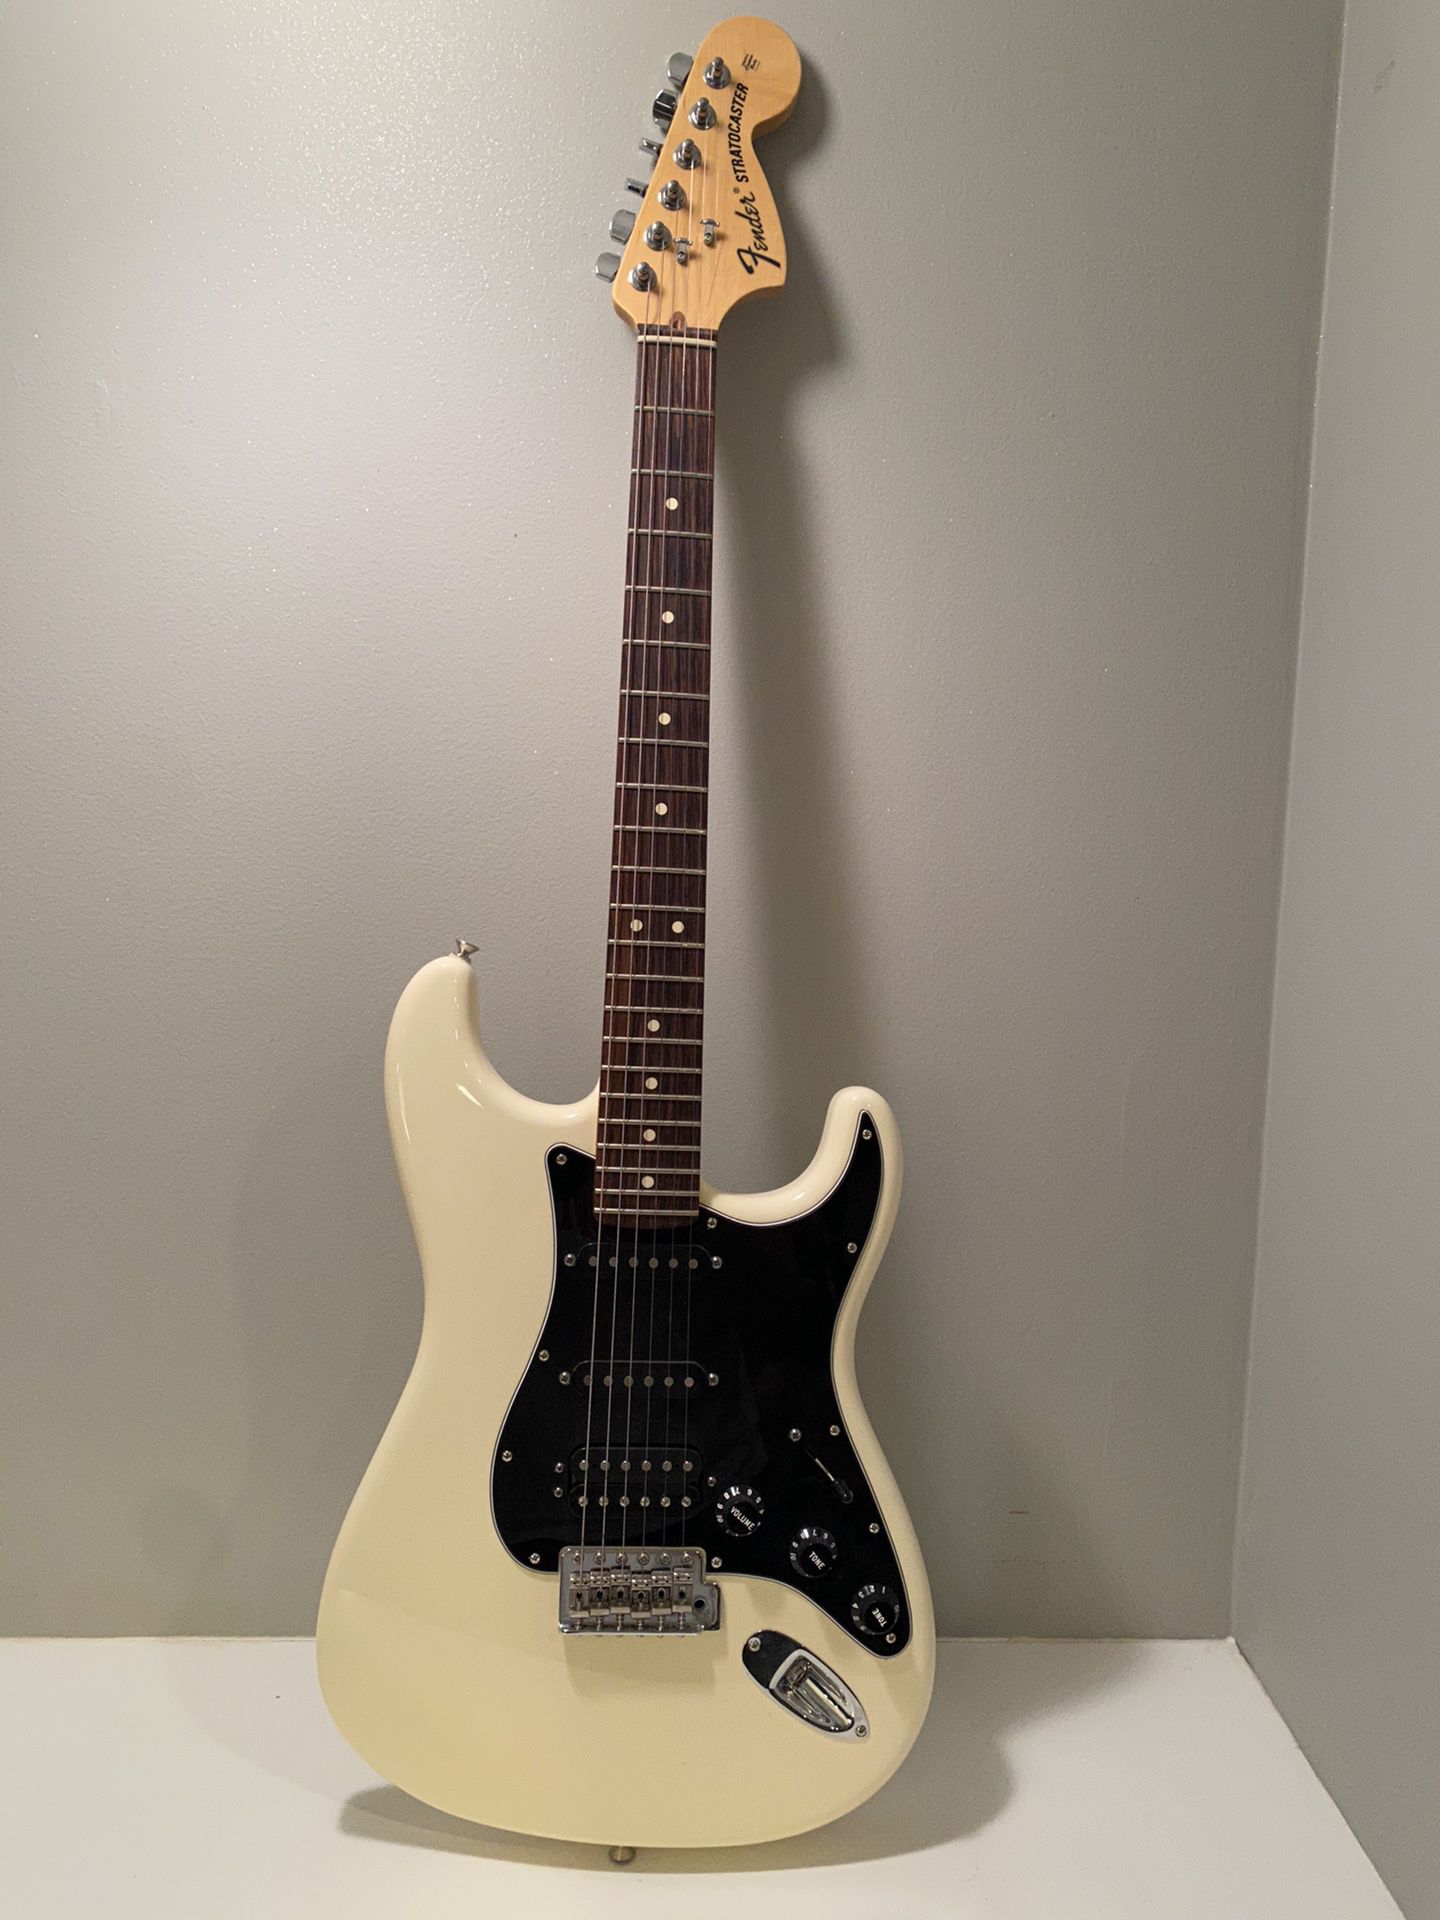 Stratocaster Guitar